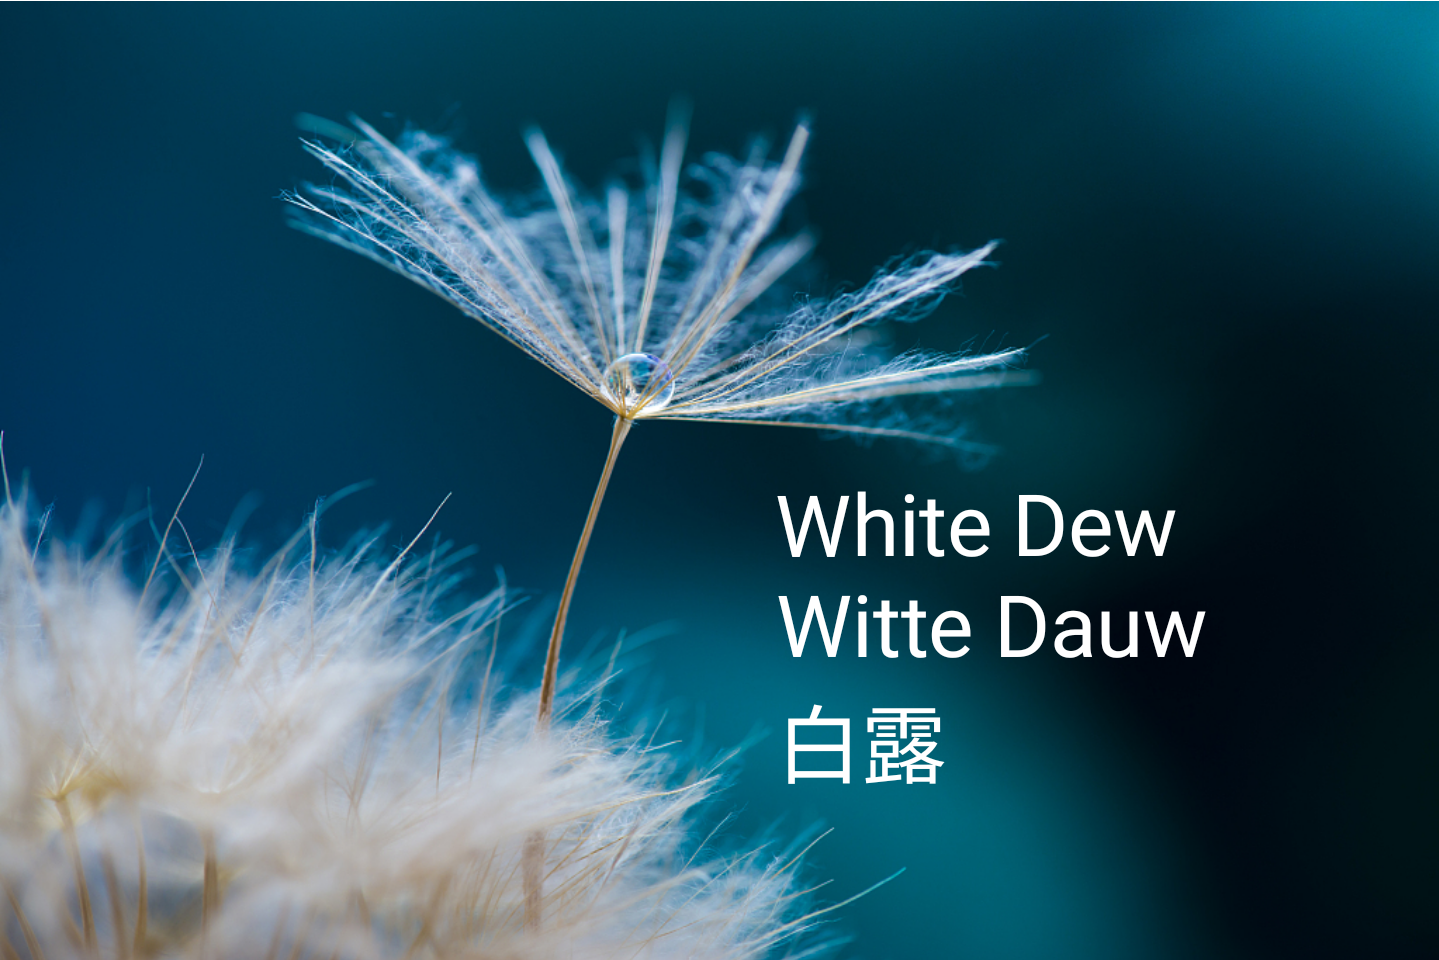 白露 Bai lu "White Dew"